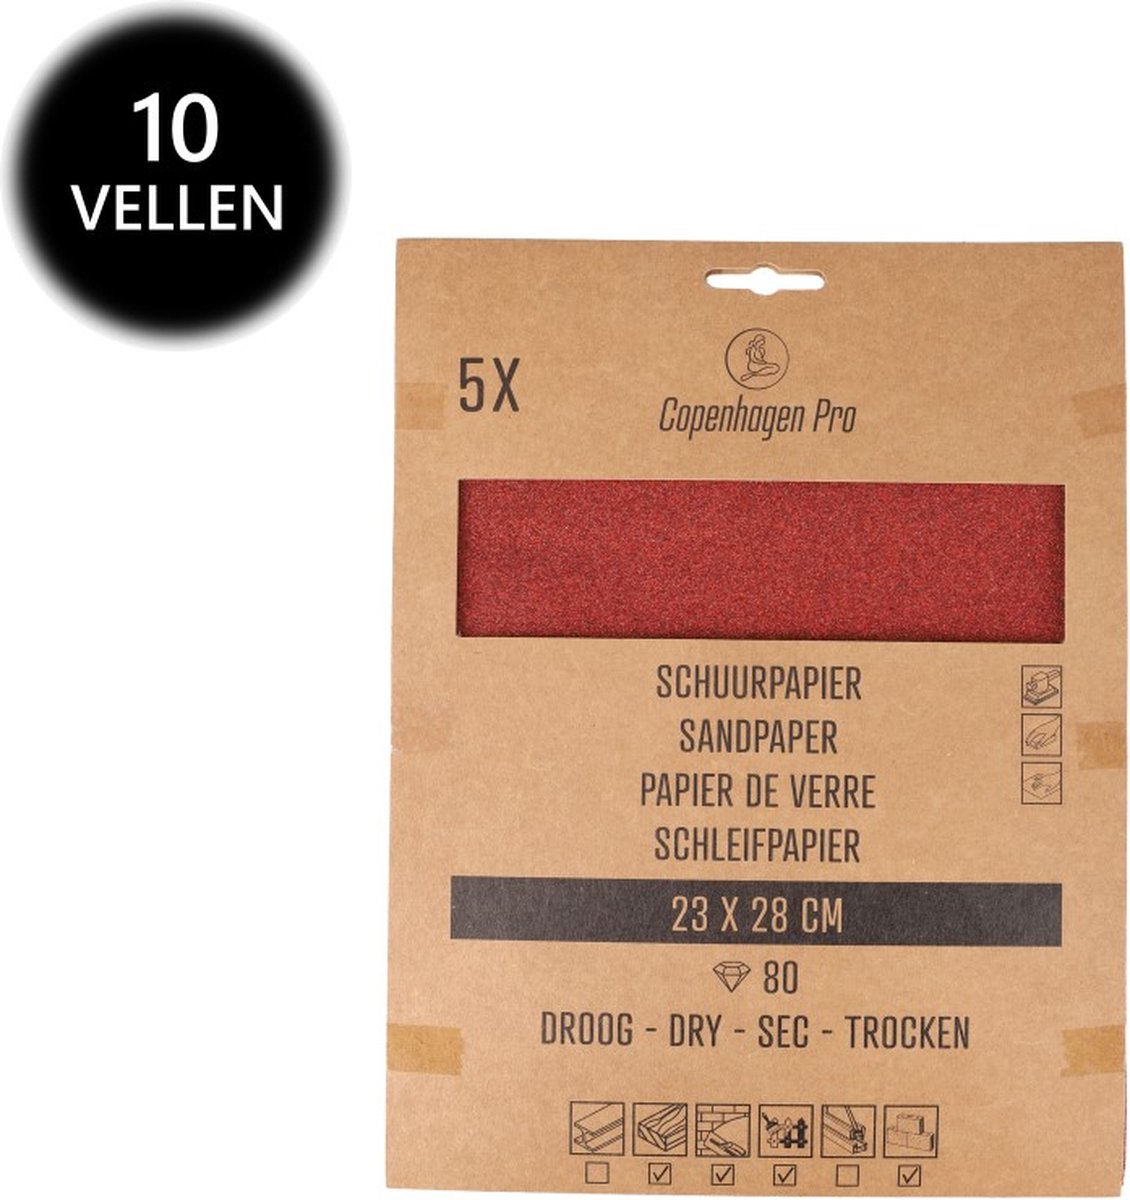 Copenhagen Pro schuurpapier - droog - korrel 80 - 10 vellen - 28 x 23 cm